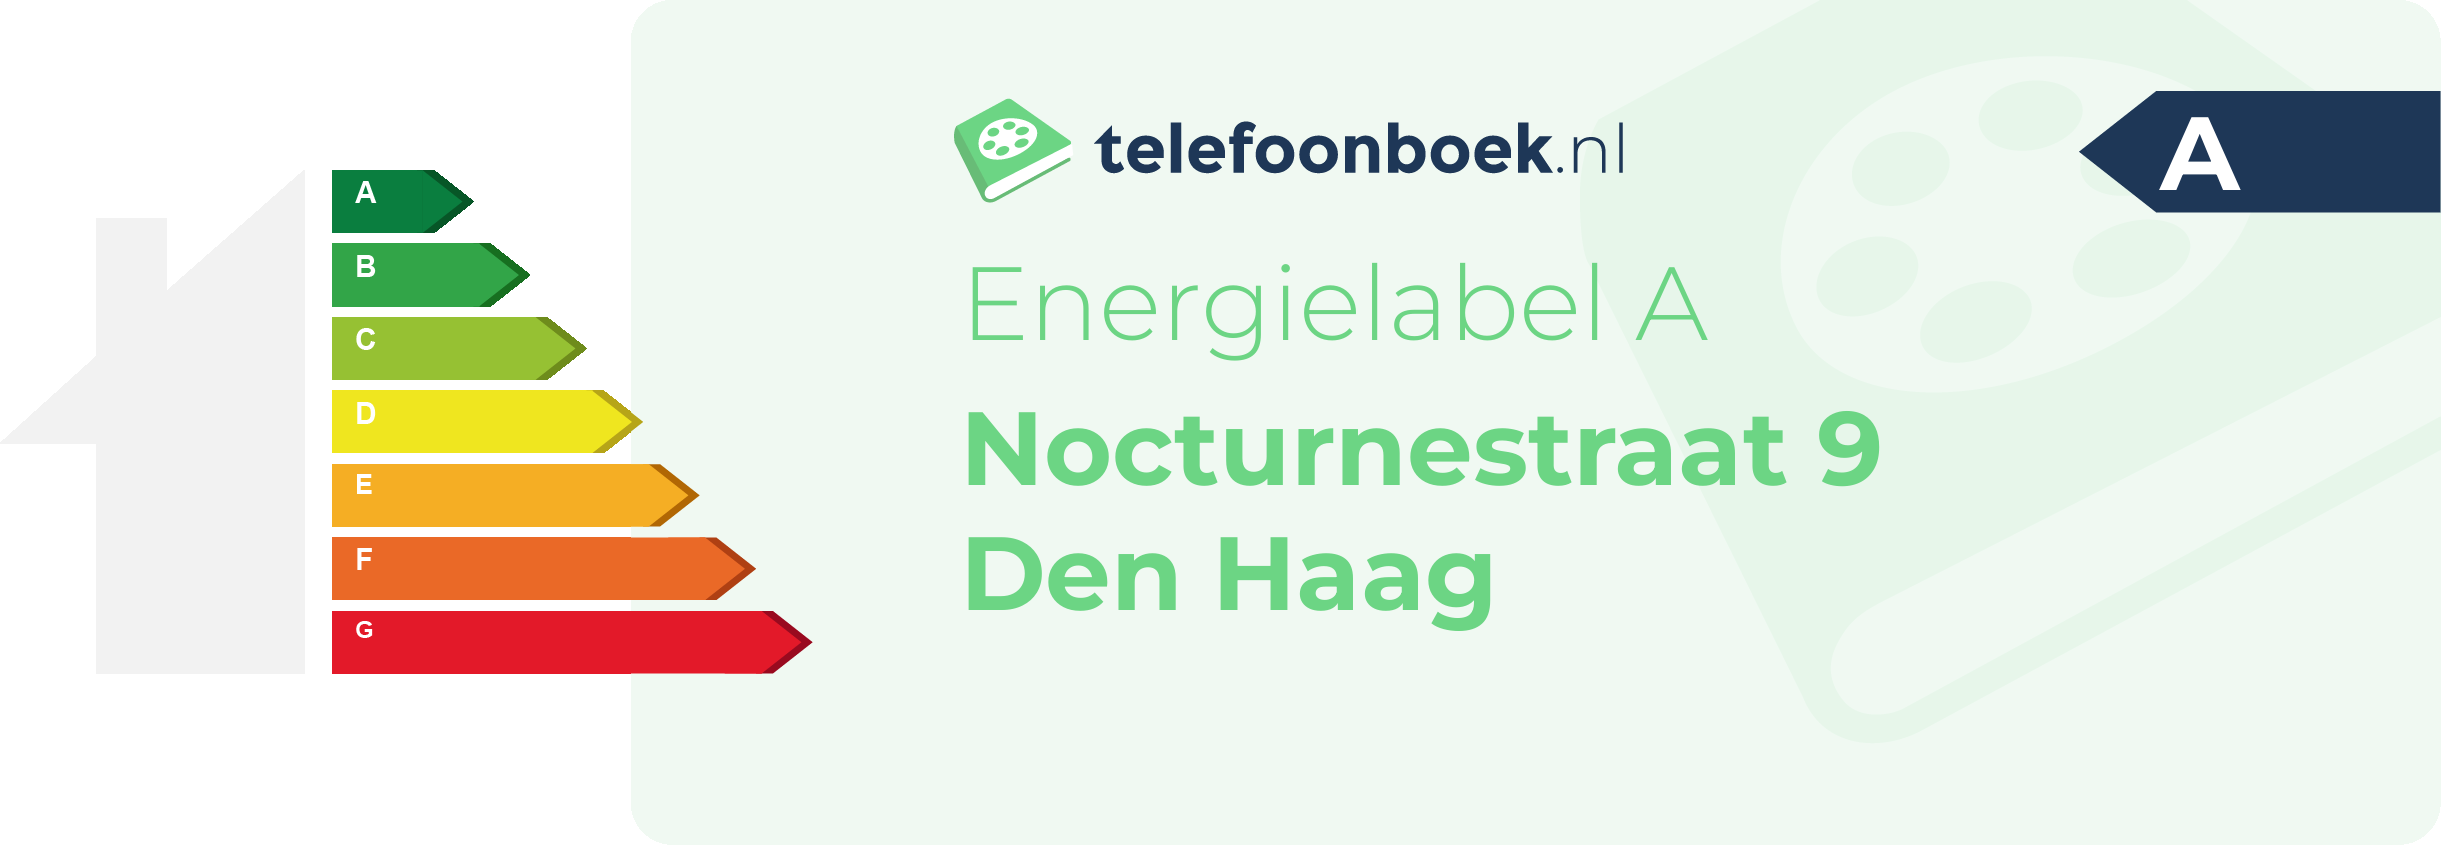 Energielabel Nocturnestraat 9 Den Haag